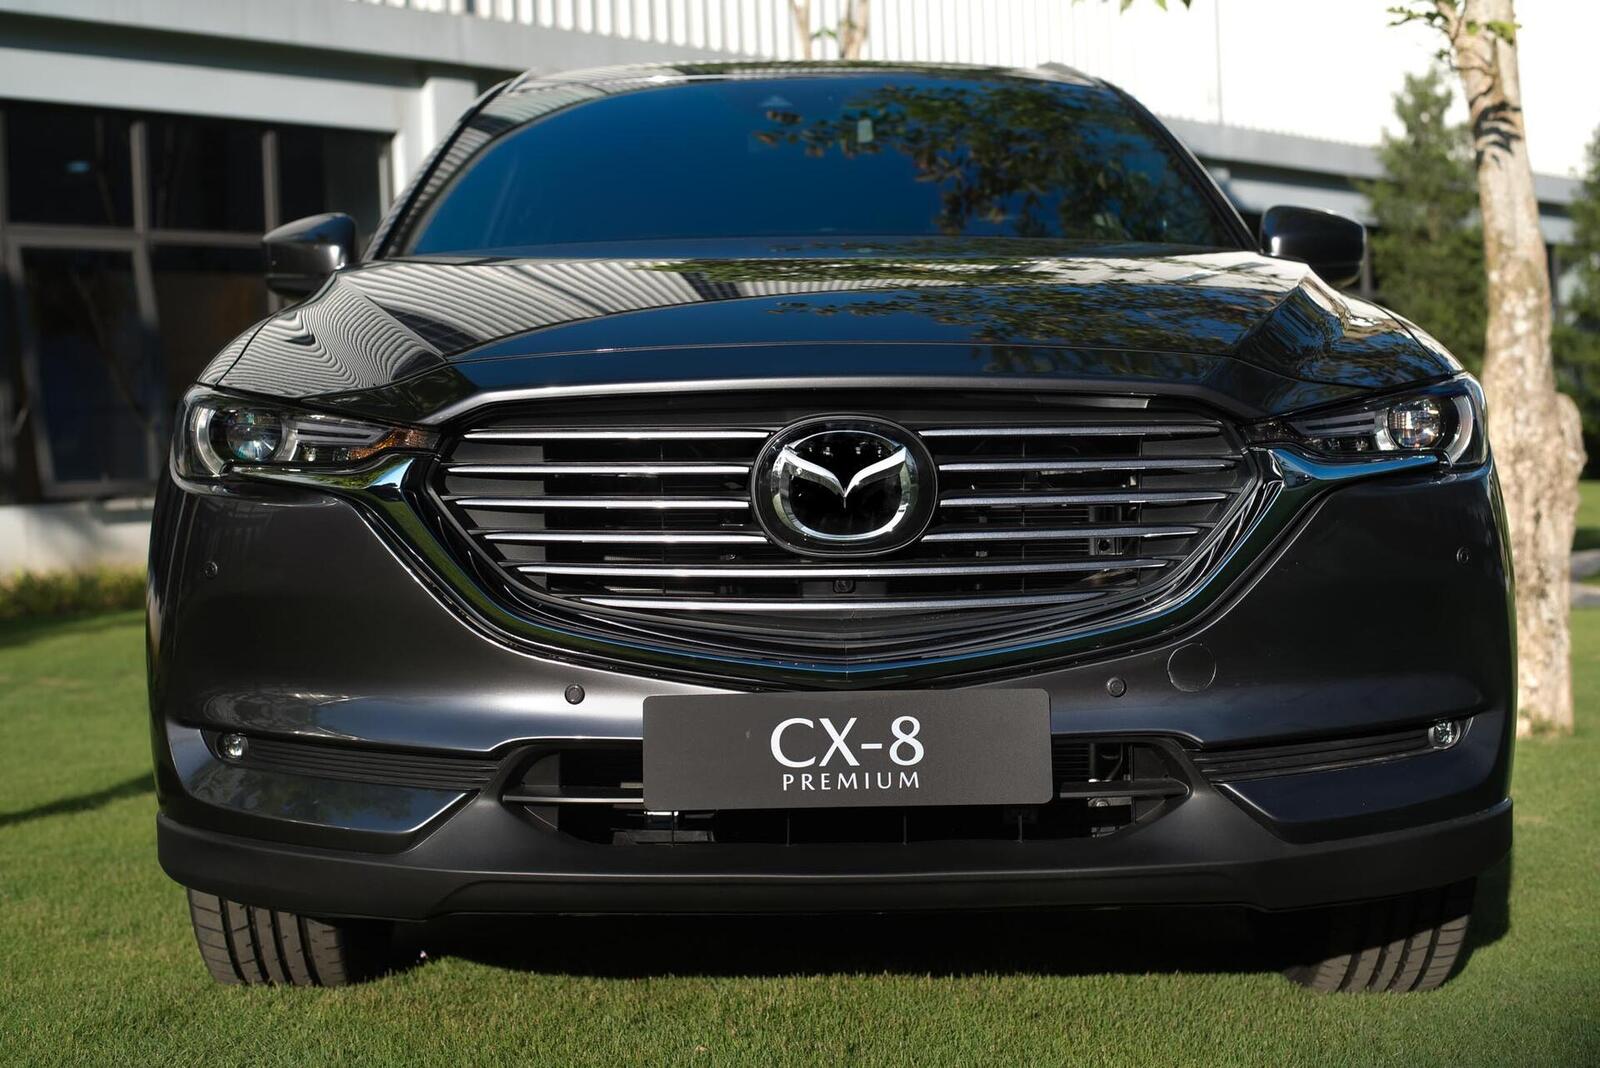 So sánh trang bị tiện nghi và an toàn của các phiên bản Mazda CX-8 - Hình 21